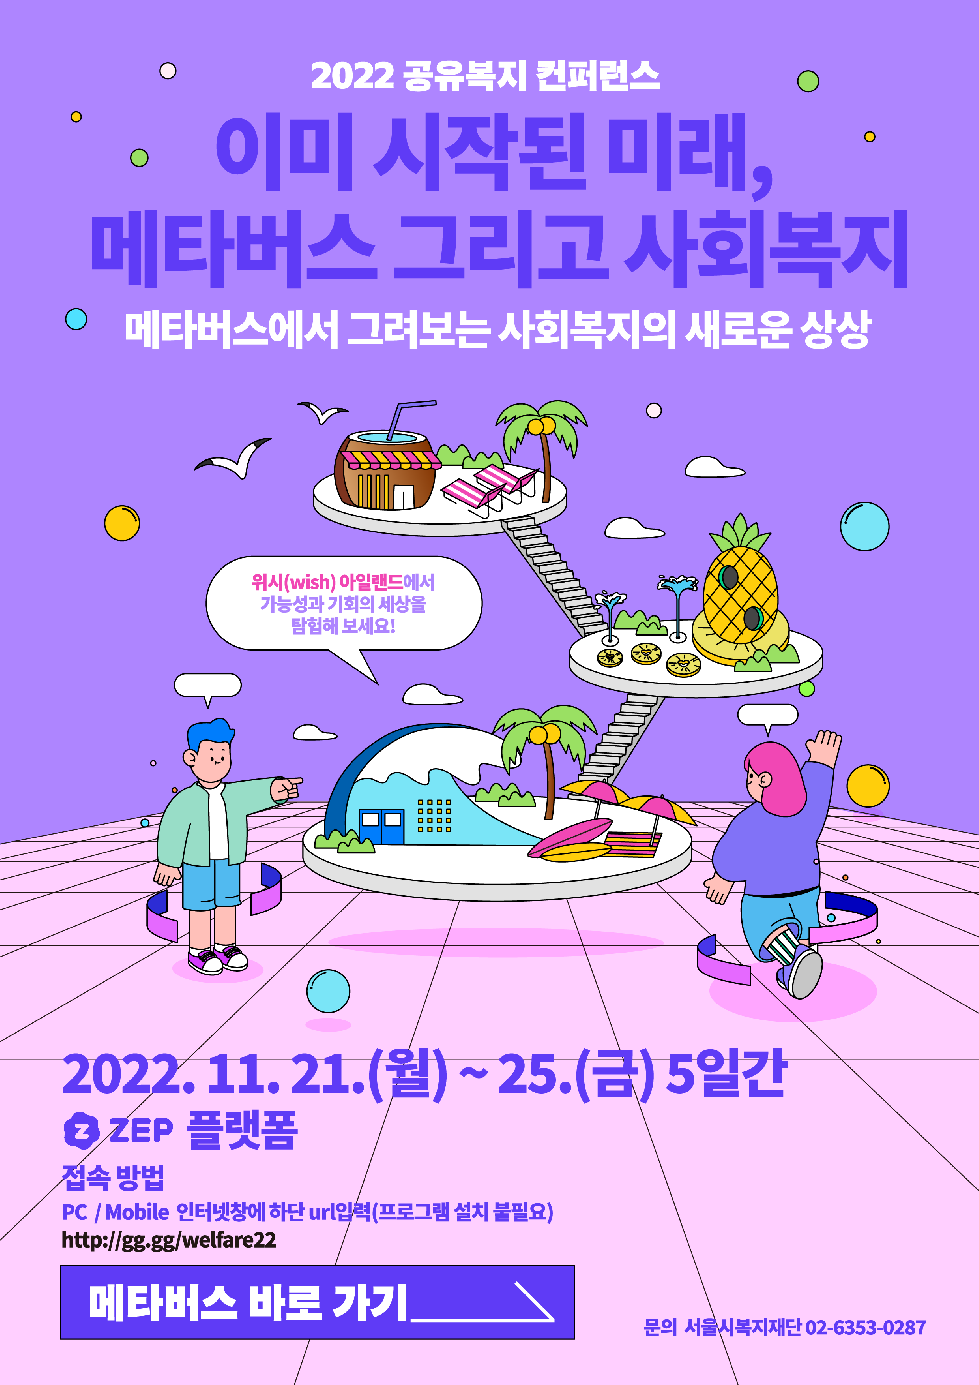 서울시복지재단, 메타버스를 활용한 `공유복지 컨퍼런스` 개최